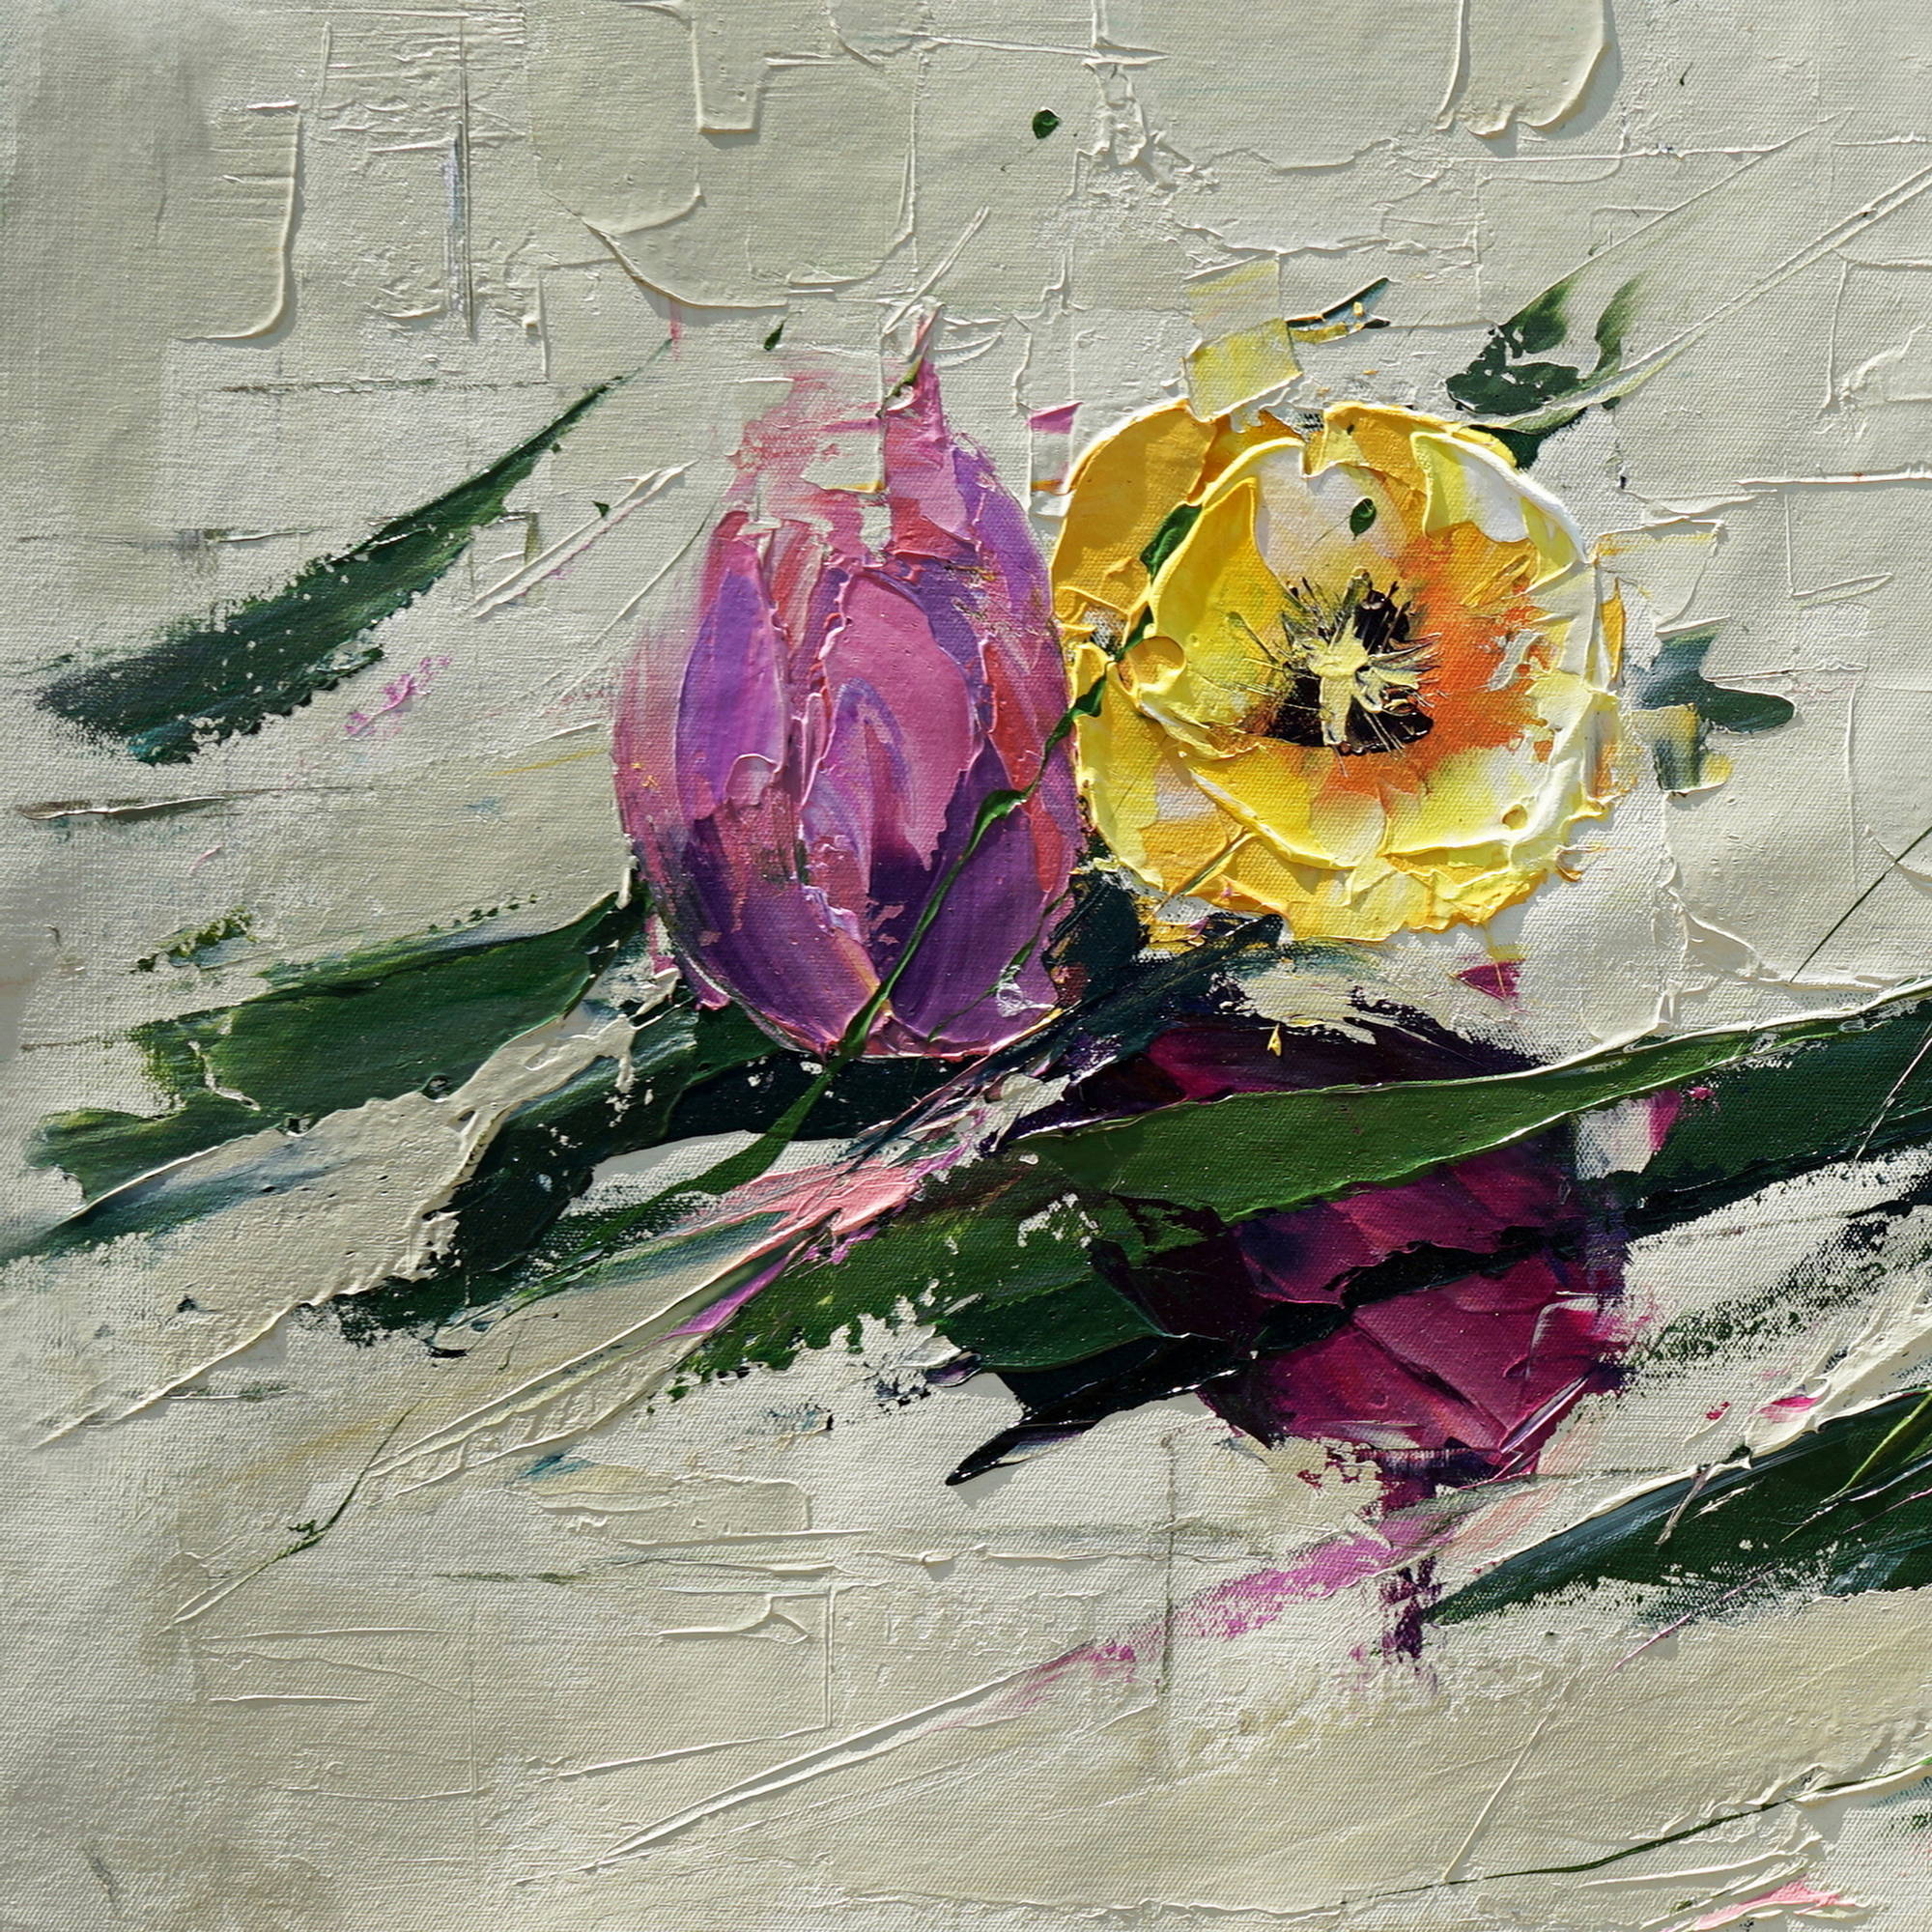 Composition de tulipes abstraites peintes à la main 75x150cm